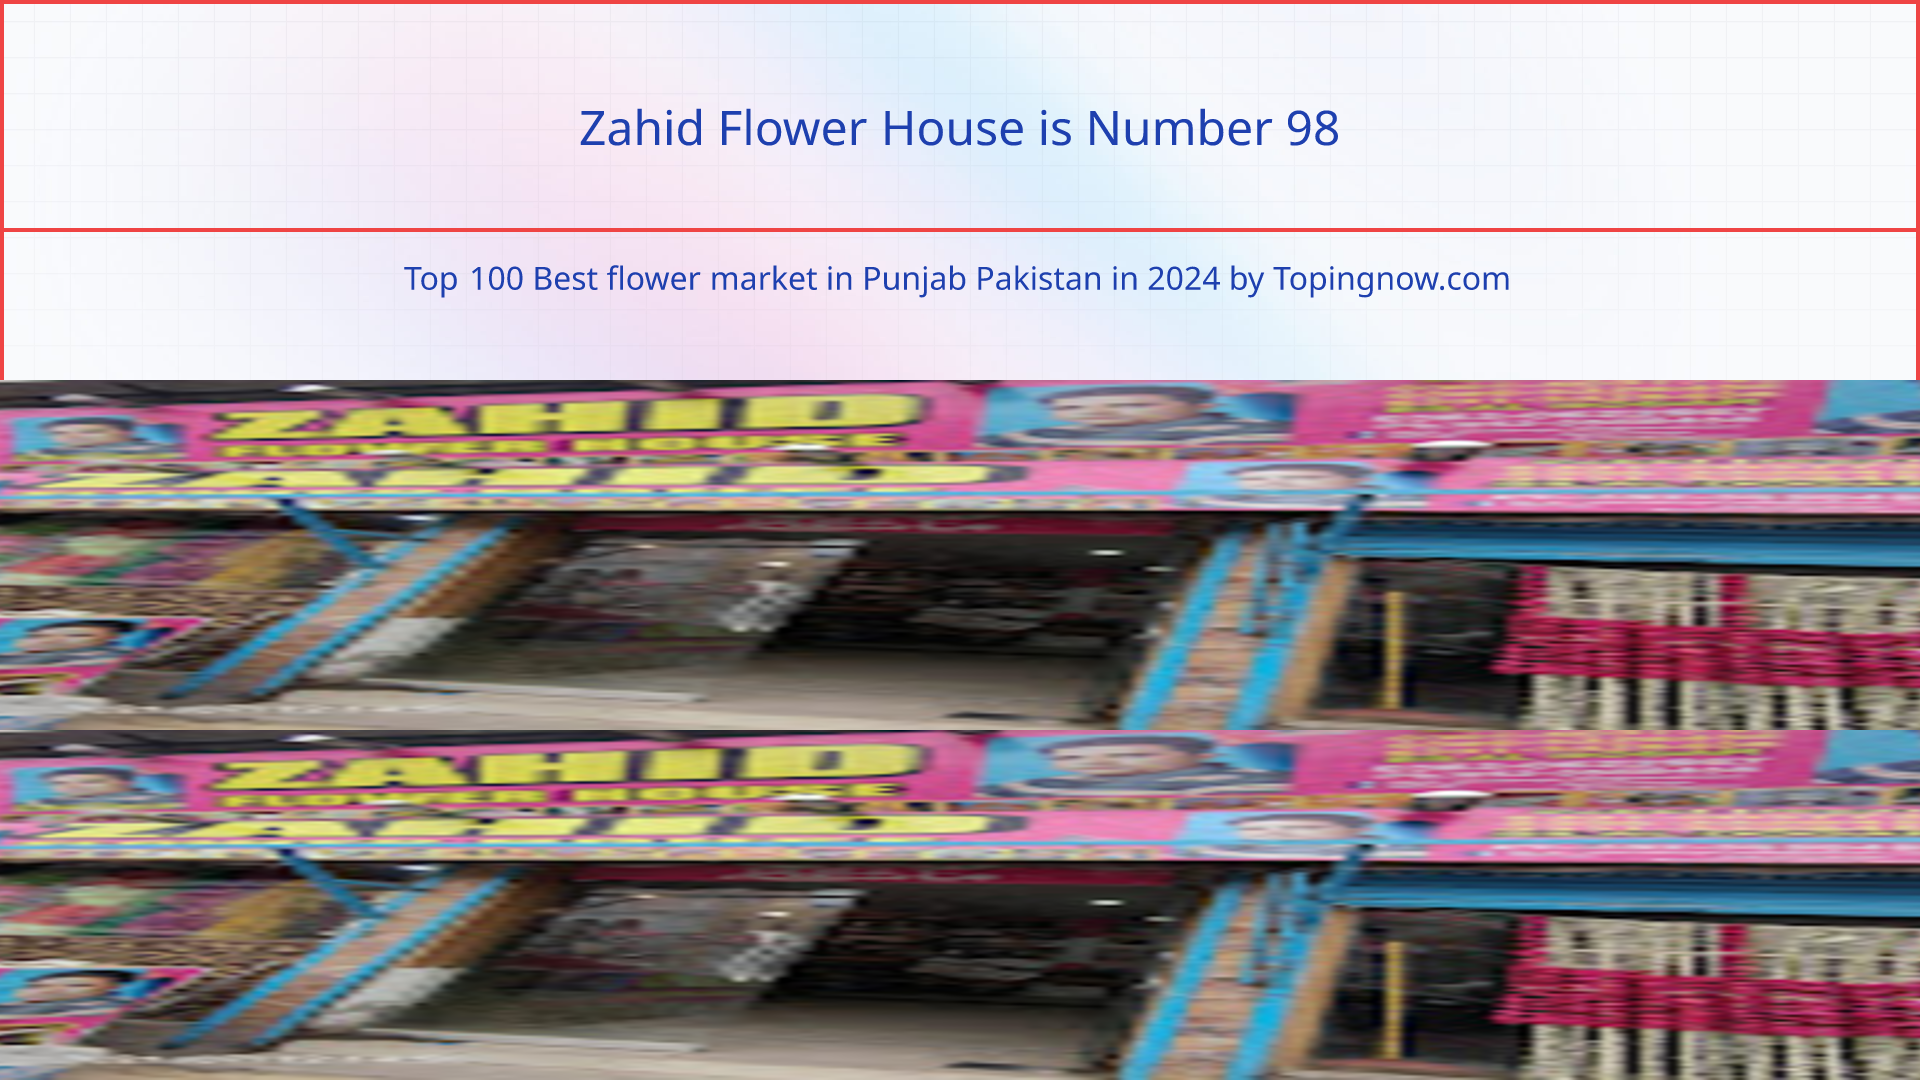 Zahid Flower House: Top 100 Best flower market in Punjab Pakistan in 2024